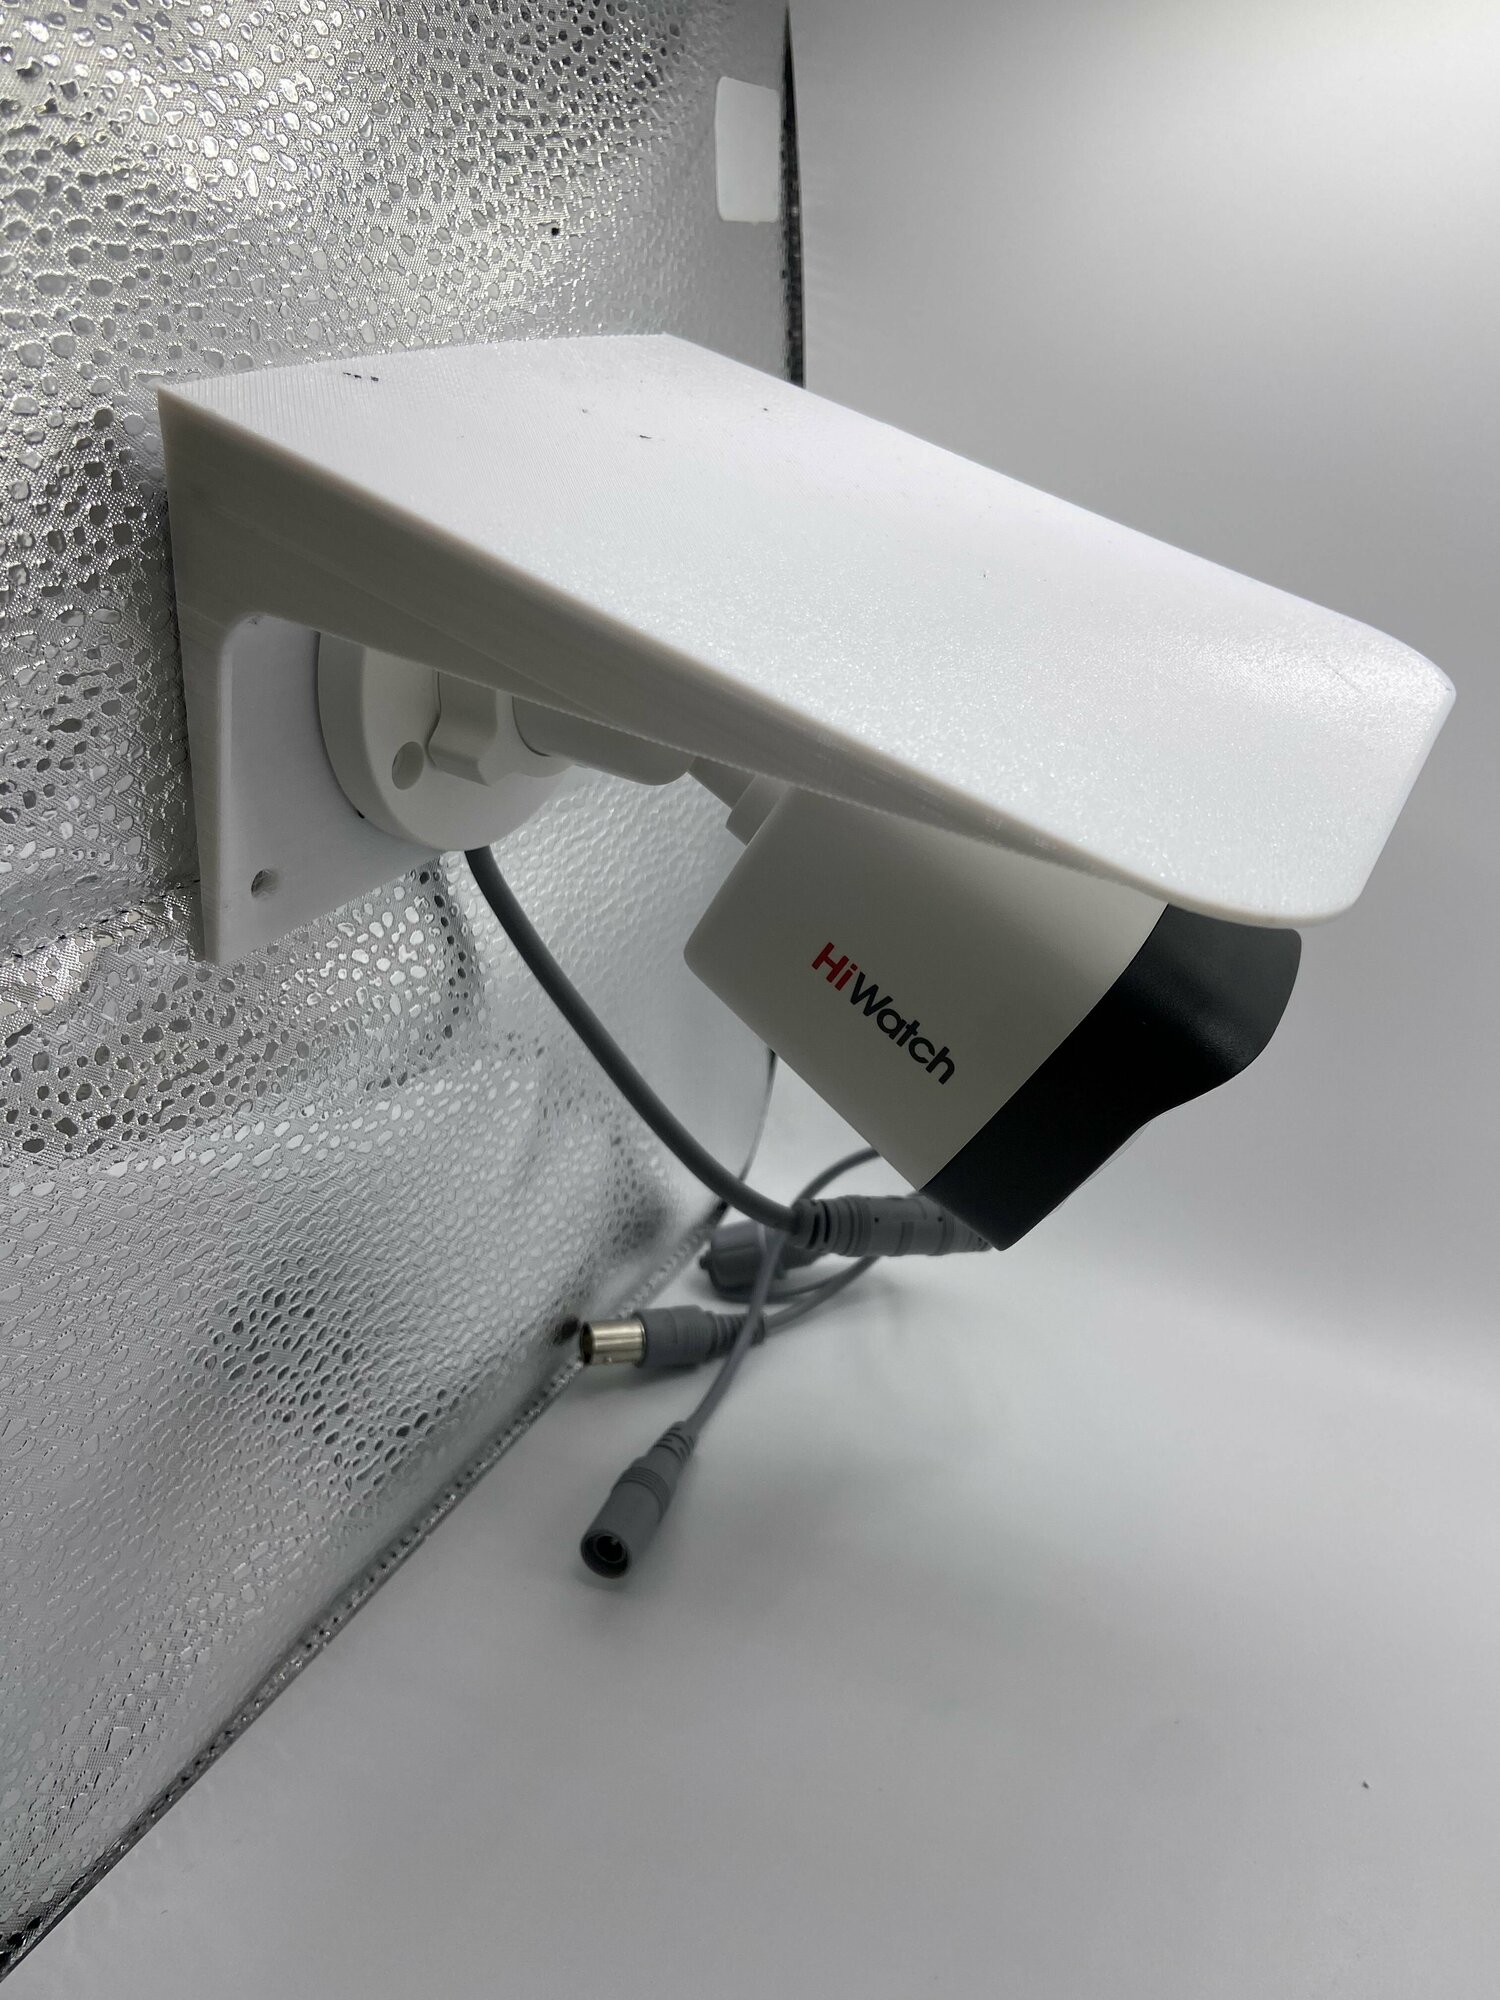 Защитный козырек для камеры 3D-печать (светильника) видеонаблюдения HIKVISION HIWATCH DAHUA плоский (белый) защита камеры от дождя, льда, снега